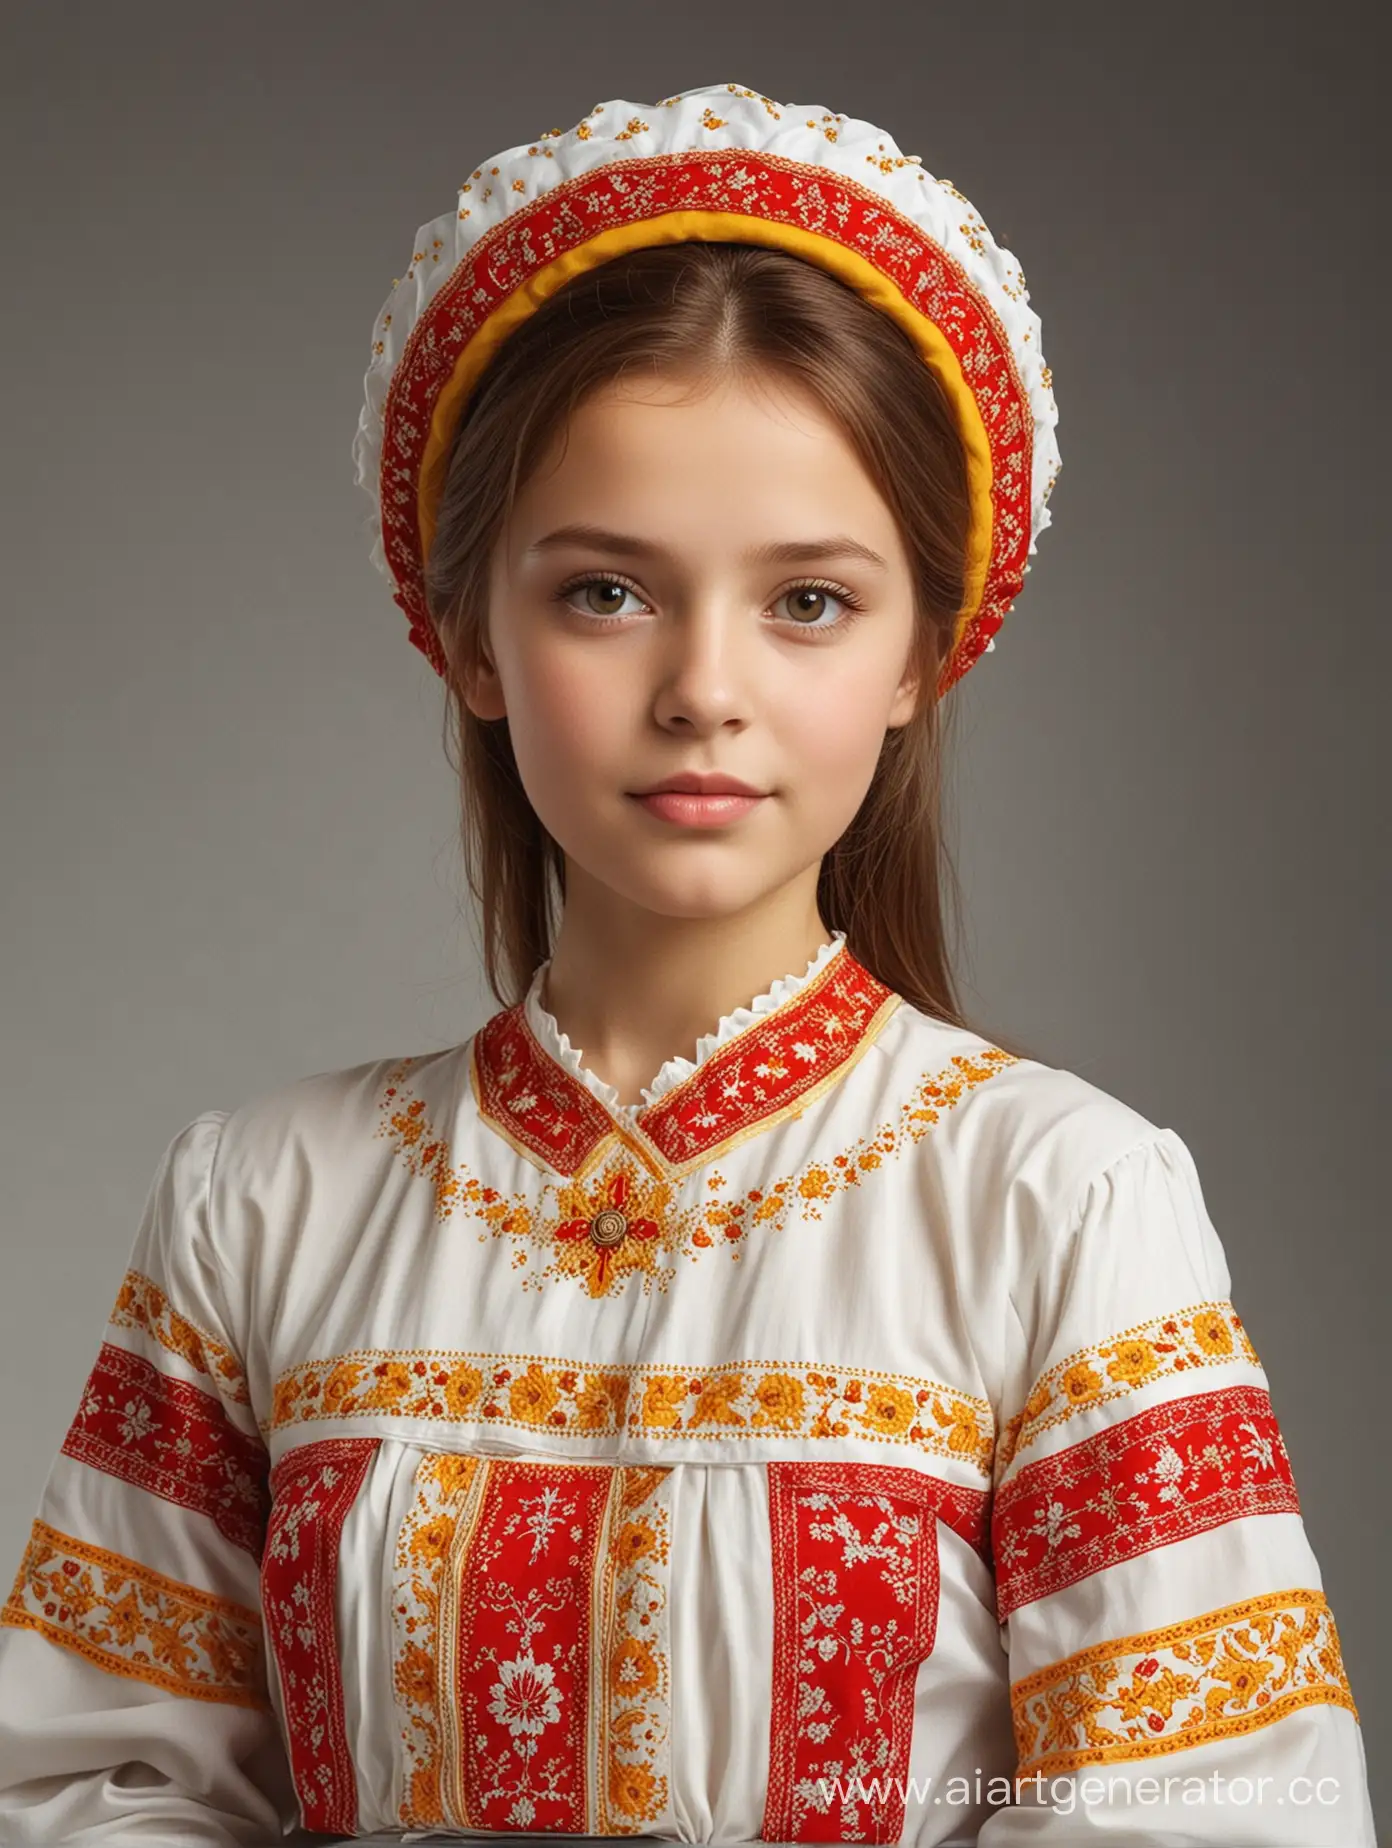 как бы выглядел мёд компании "Чувашский мёд" из Чувашской Республики, если бы был девушкой. Используй белый, красный, жёлтый цвета. 